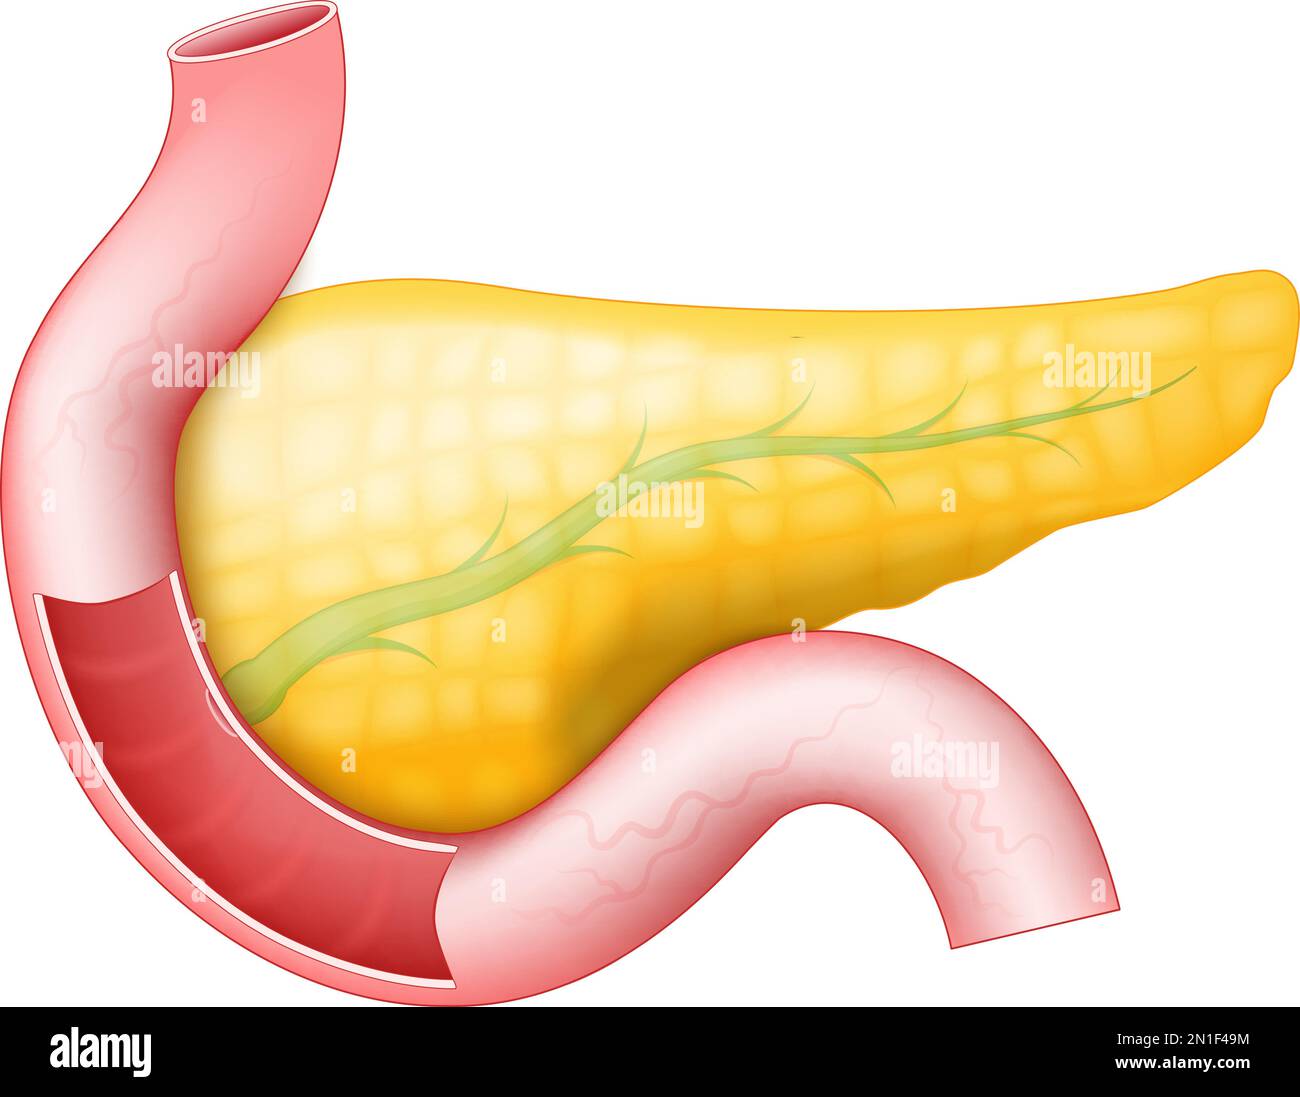 Pancréas avec canal pancréatique, duodénum et intestin grêle sur fond blanc. anatomie humaine. Partie d'un système digestif humain. vecteur Illustration de Vecteur